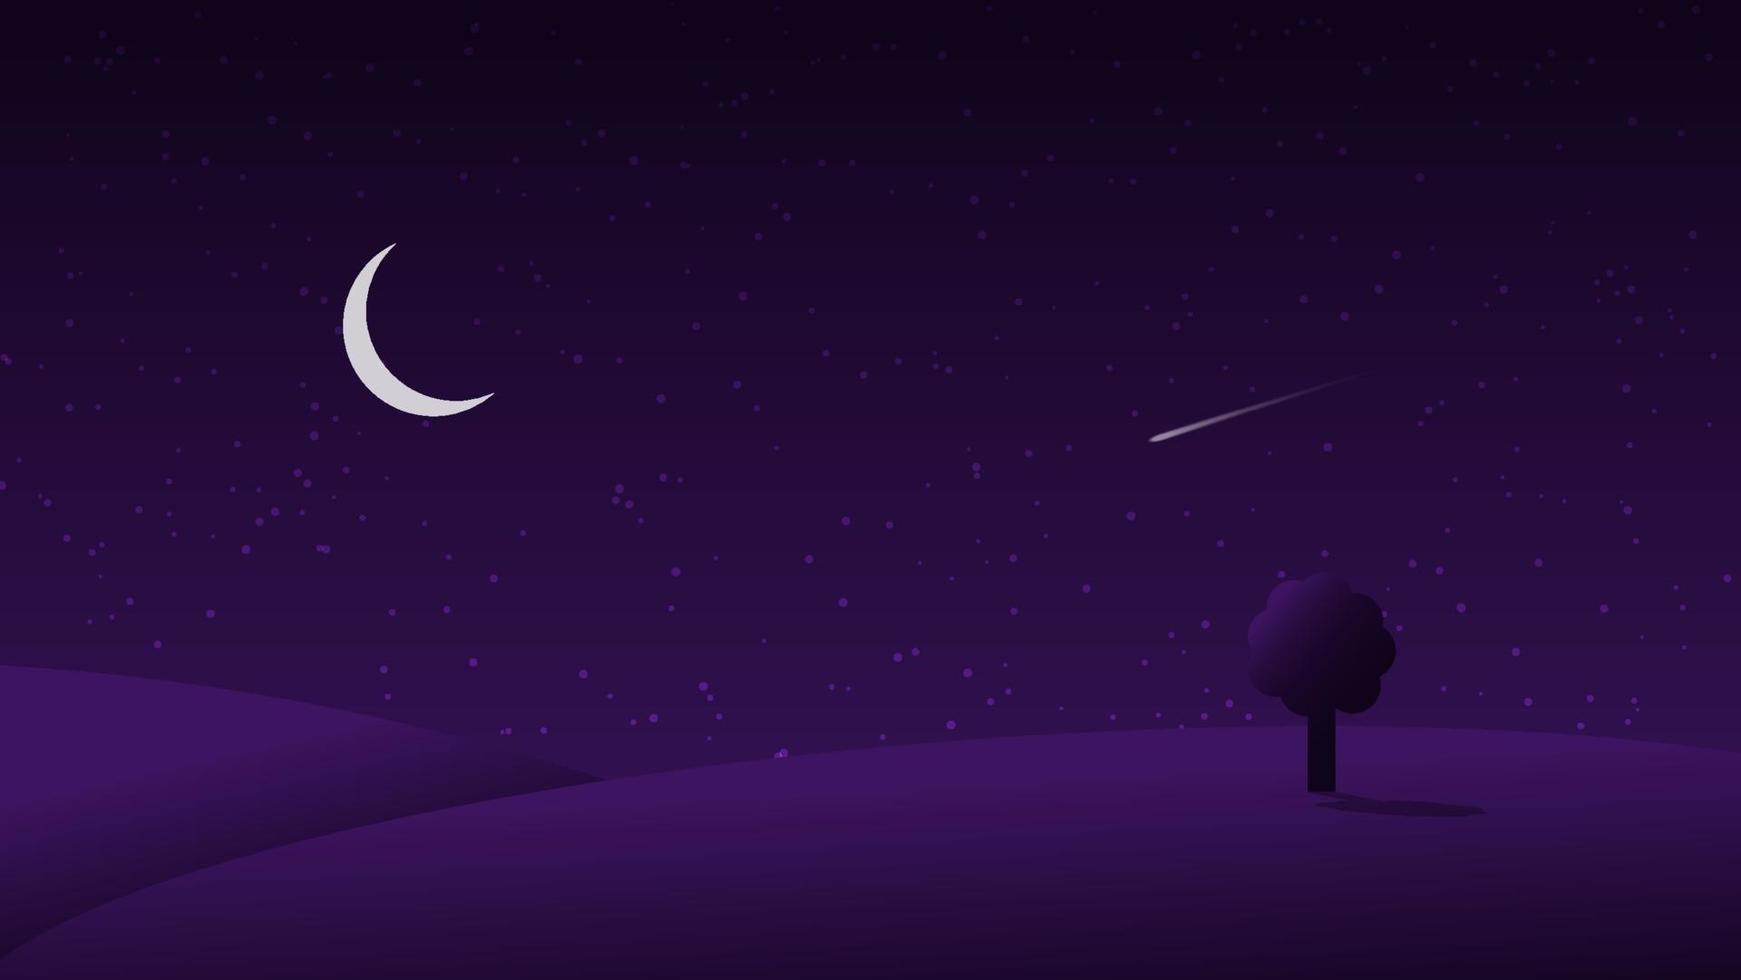 natt landskap tecknad serie scen. mörk kulle med halvmåne måne och meteor i starry himmel vektor